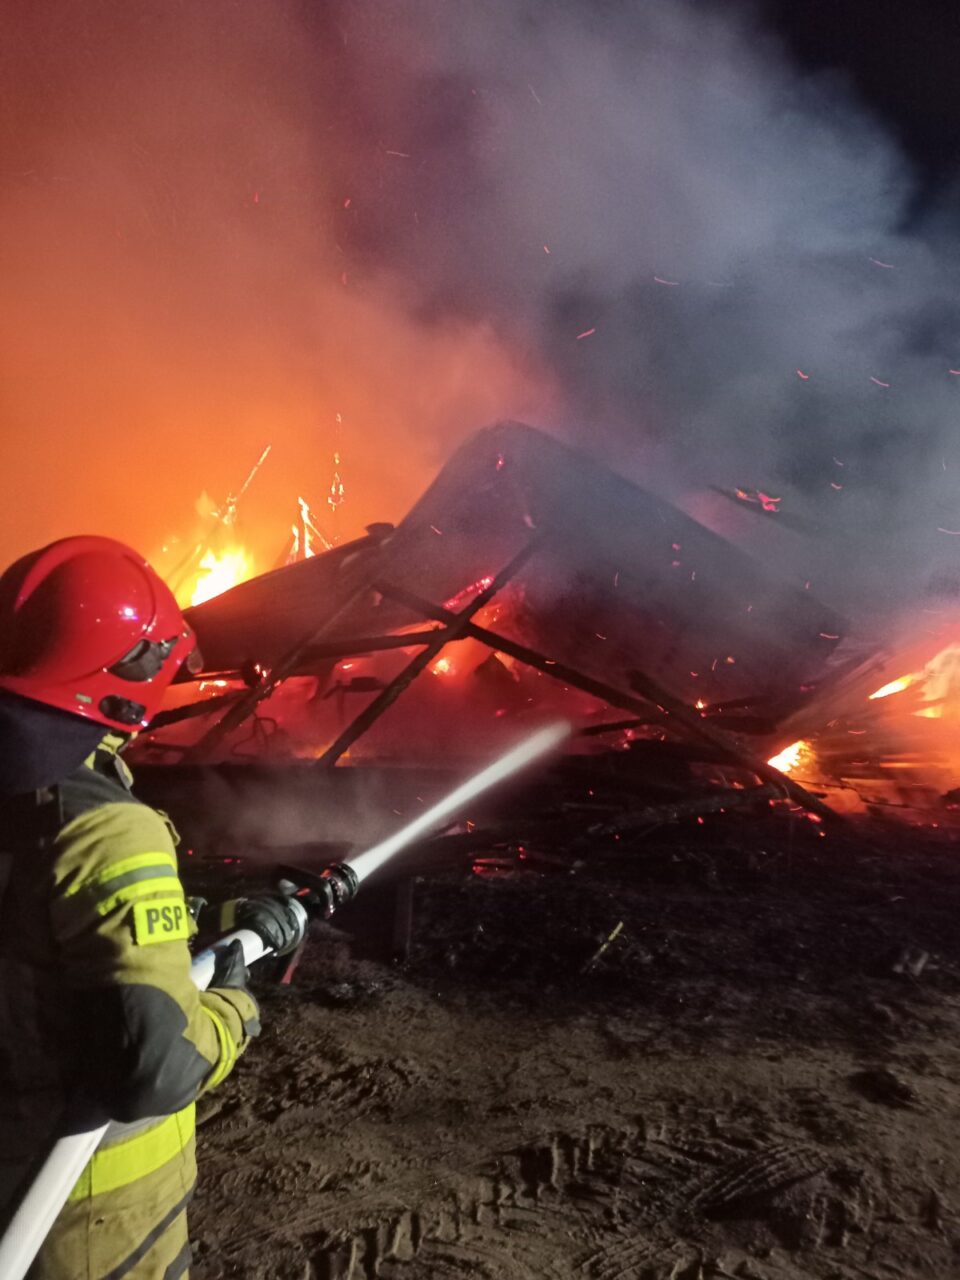 Strażak w pełnym umundurowaniu gasi pożar, trzyma wąż strażacki skierowany w stronę płonących konstrukcji; widoczne są iskry i dym.